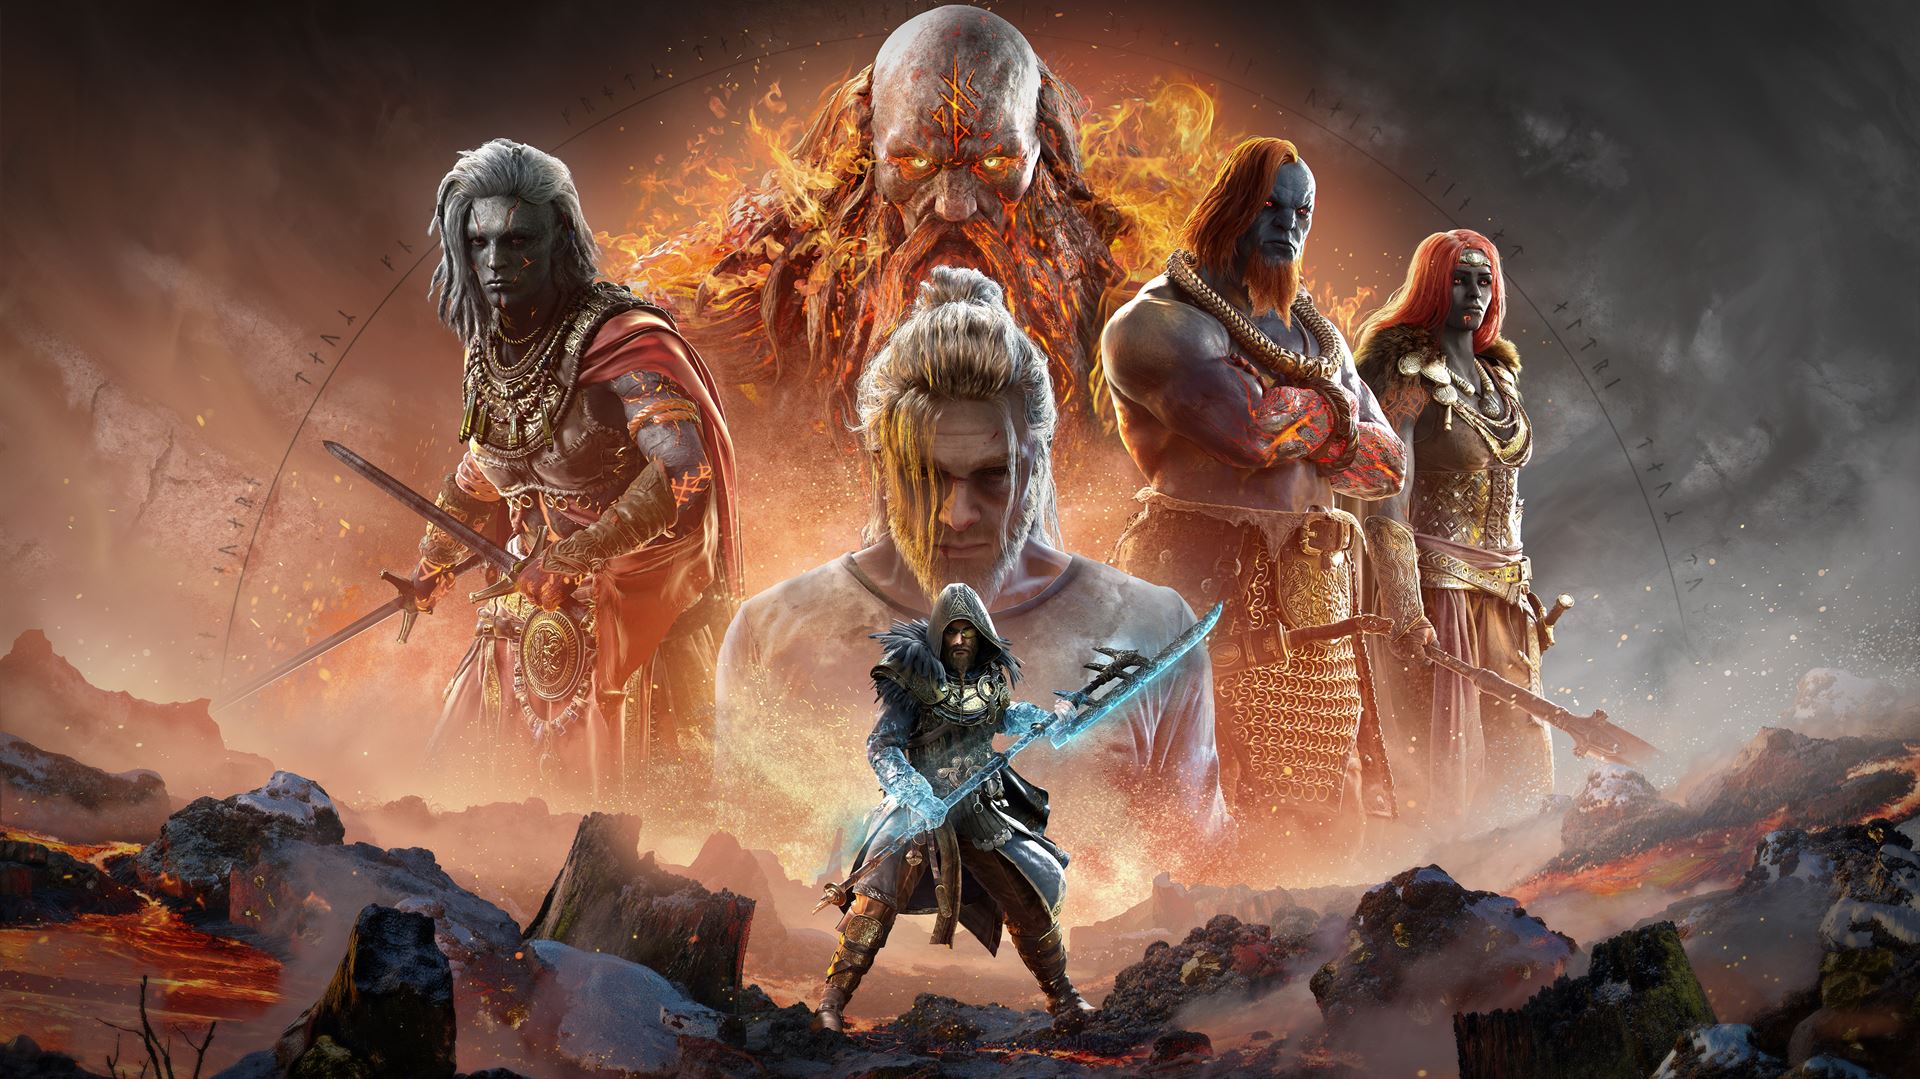 "Dawn of Ragnarök" สัมผัสประสบการณ์ของเทพเจ้าใน Assassin’s Creed Valhalla พร้อมผจญภัยในอาณาจักรสวาร์ทัลฟ์เฮมได้แล้ววันนี้